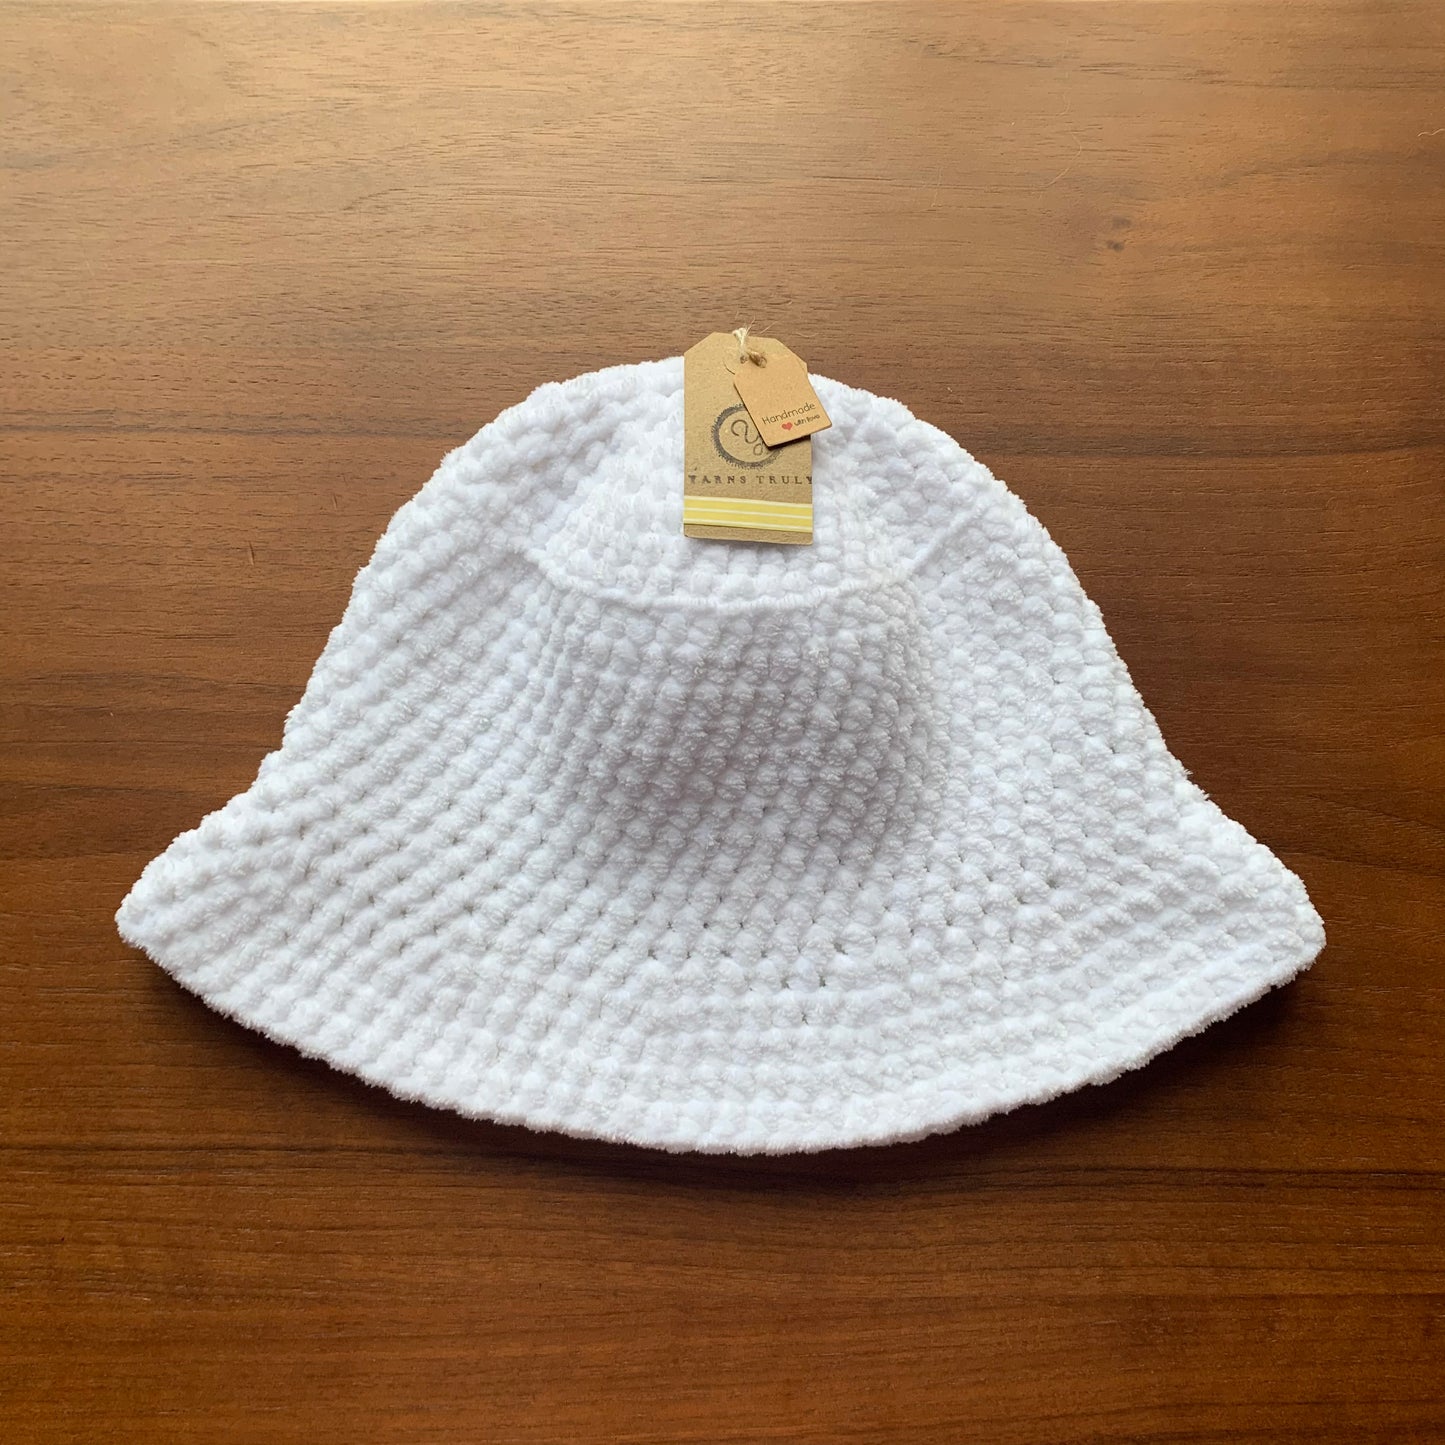 Handmade crushed velvet crochet bucket hats - CHOOSE YOUR COLOUR